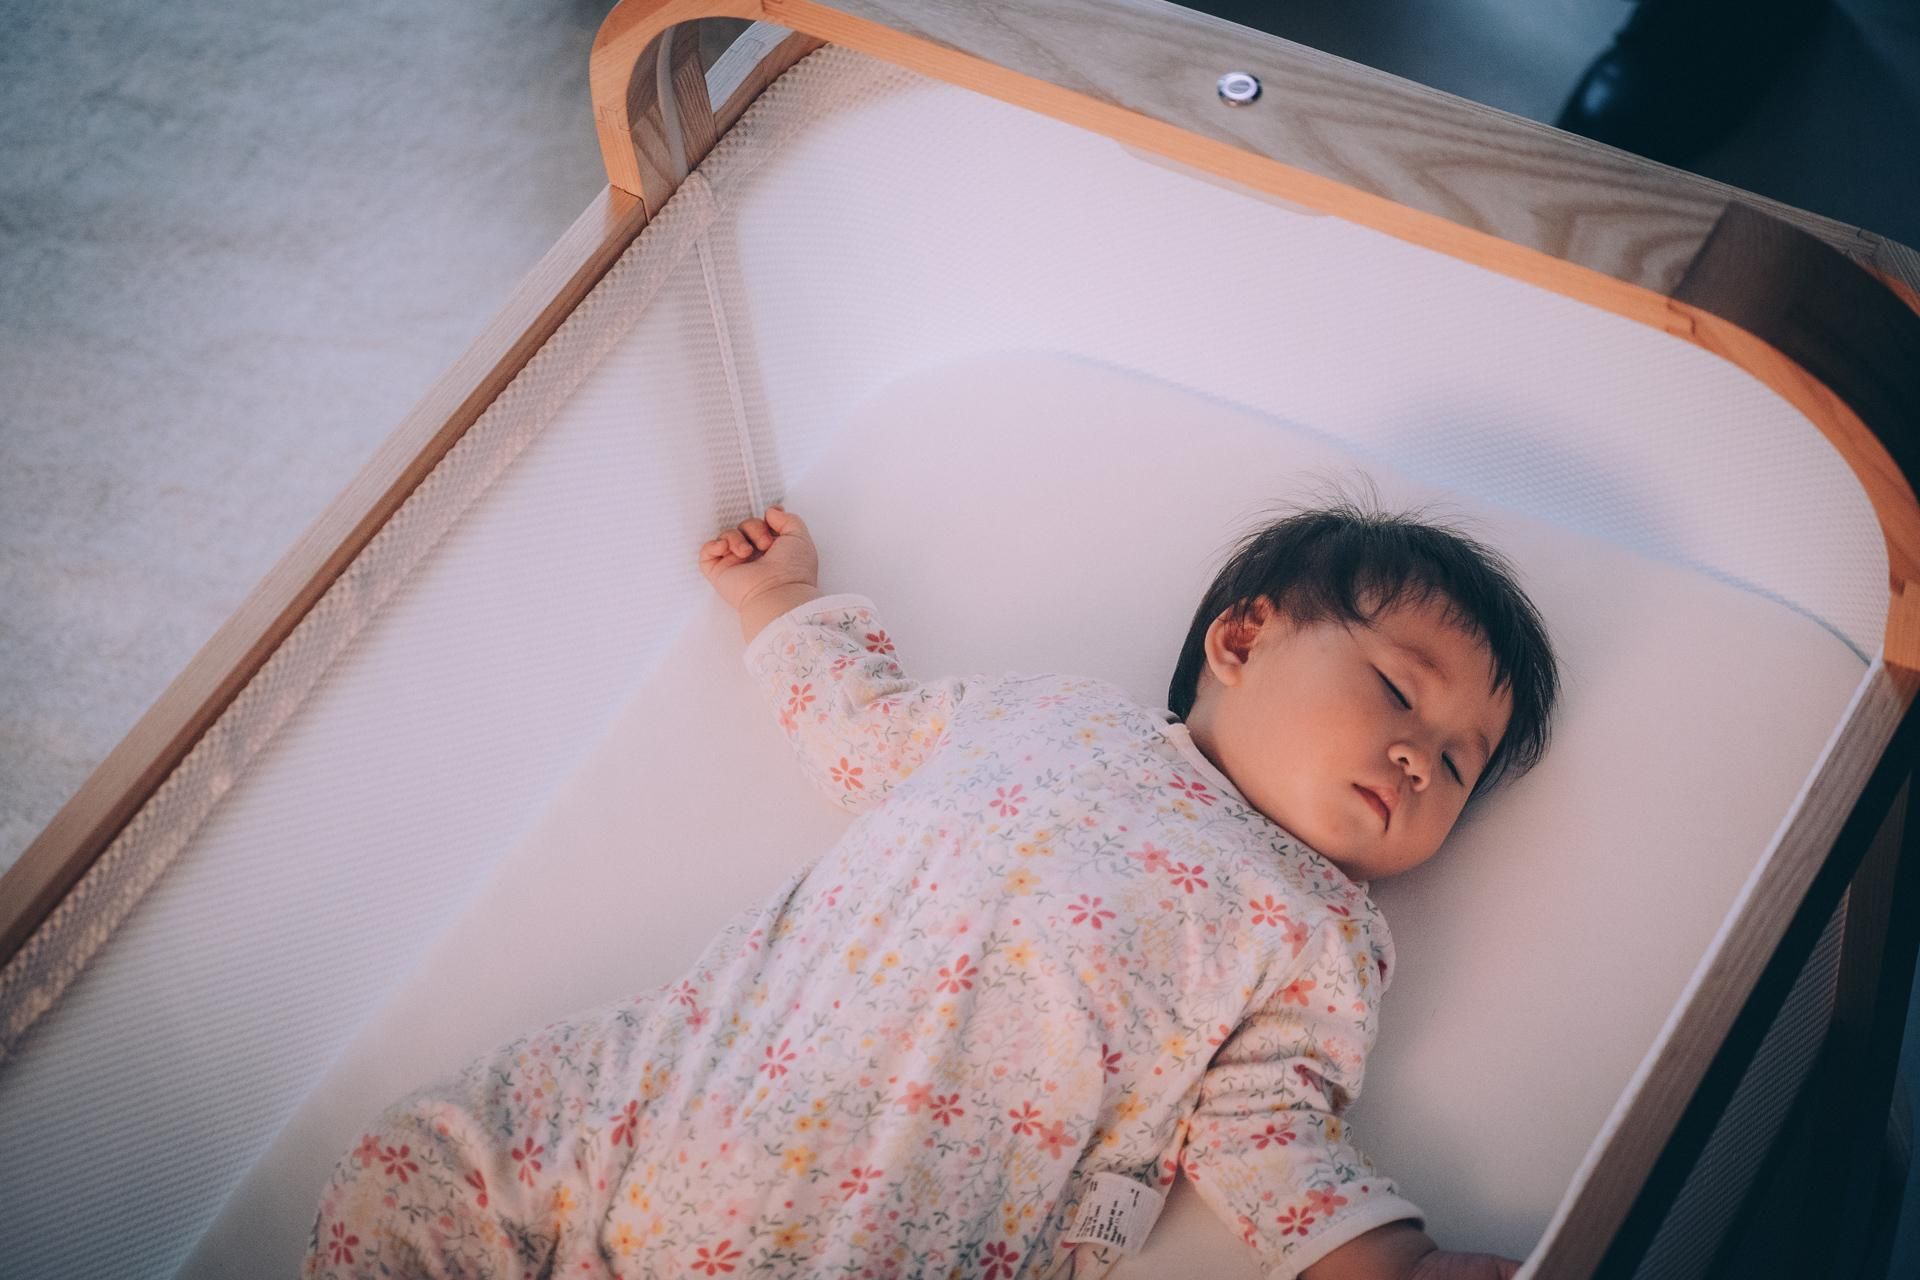 В США создали колыбель с ИИ, она помогает малышу заснуть: фото, видео